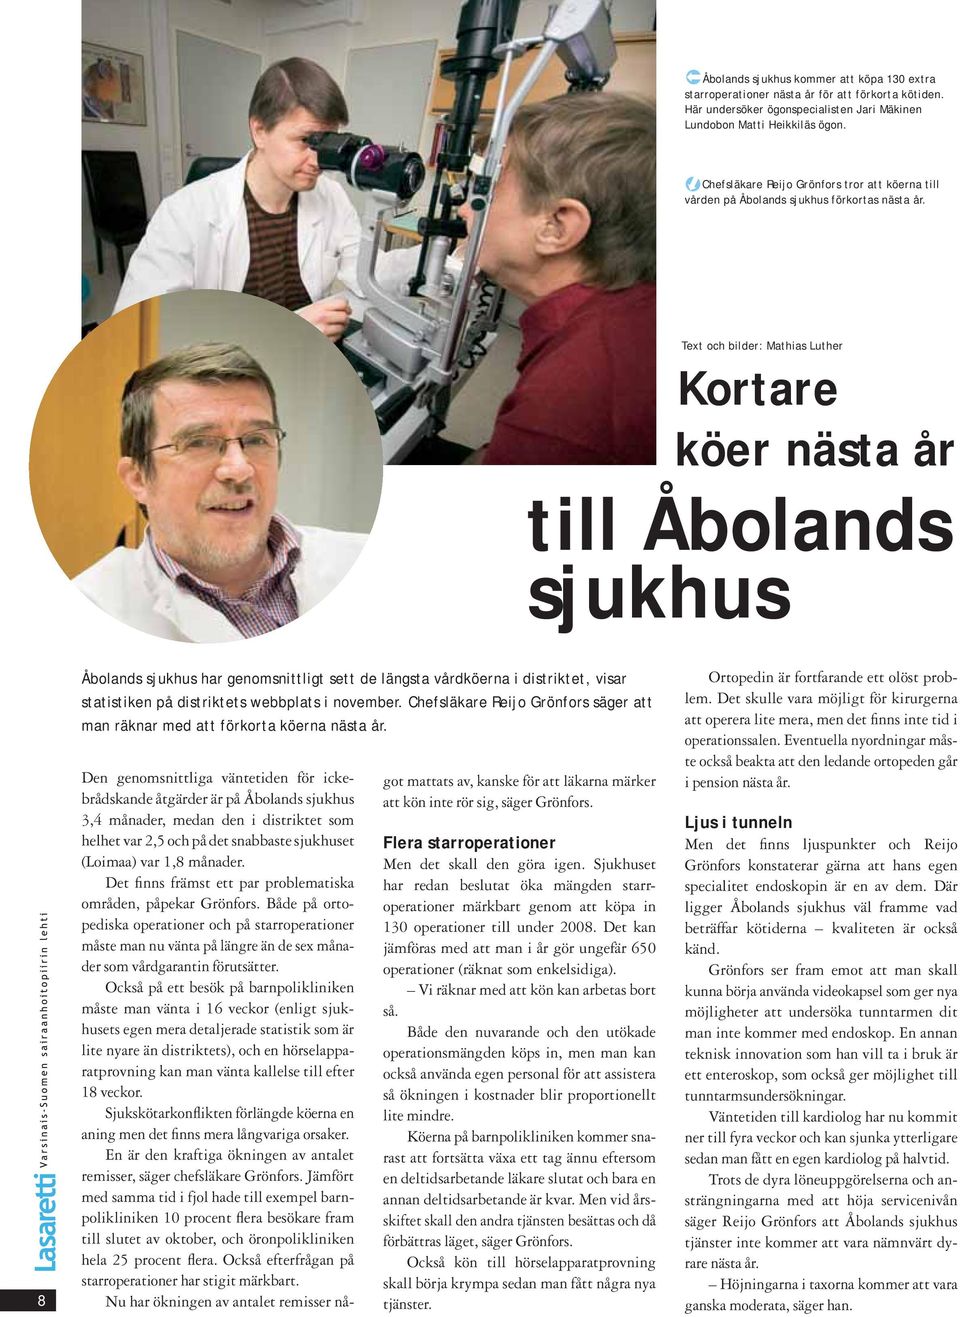 Text och bilder: Mathias Luther Kortare köer nästa år till Åbolands sjukhus 8 Åbolands sjukhus har genomsnittligt sett de längsta vårdköerna i distriktet, visar statistiken på distriktets webbplats i